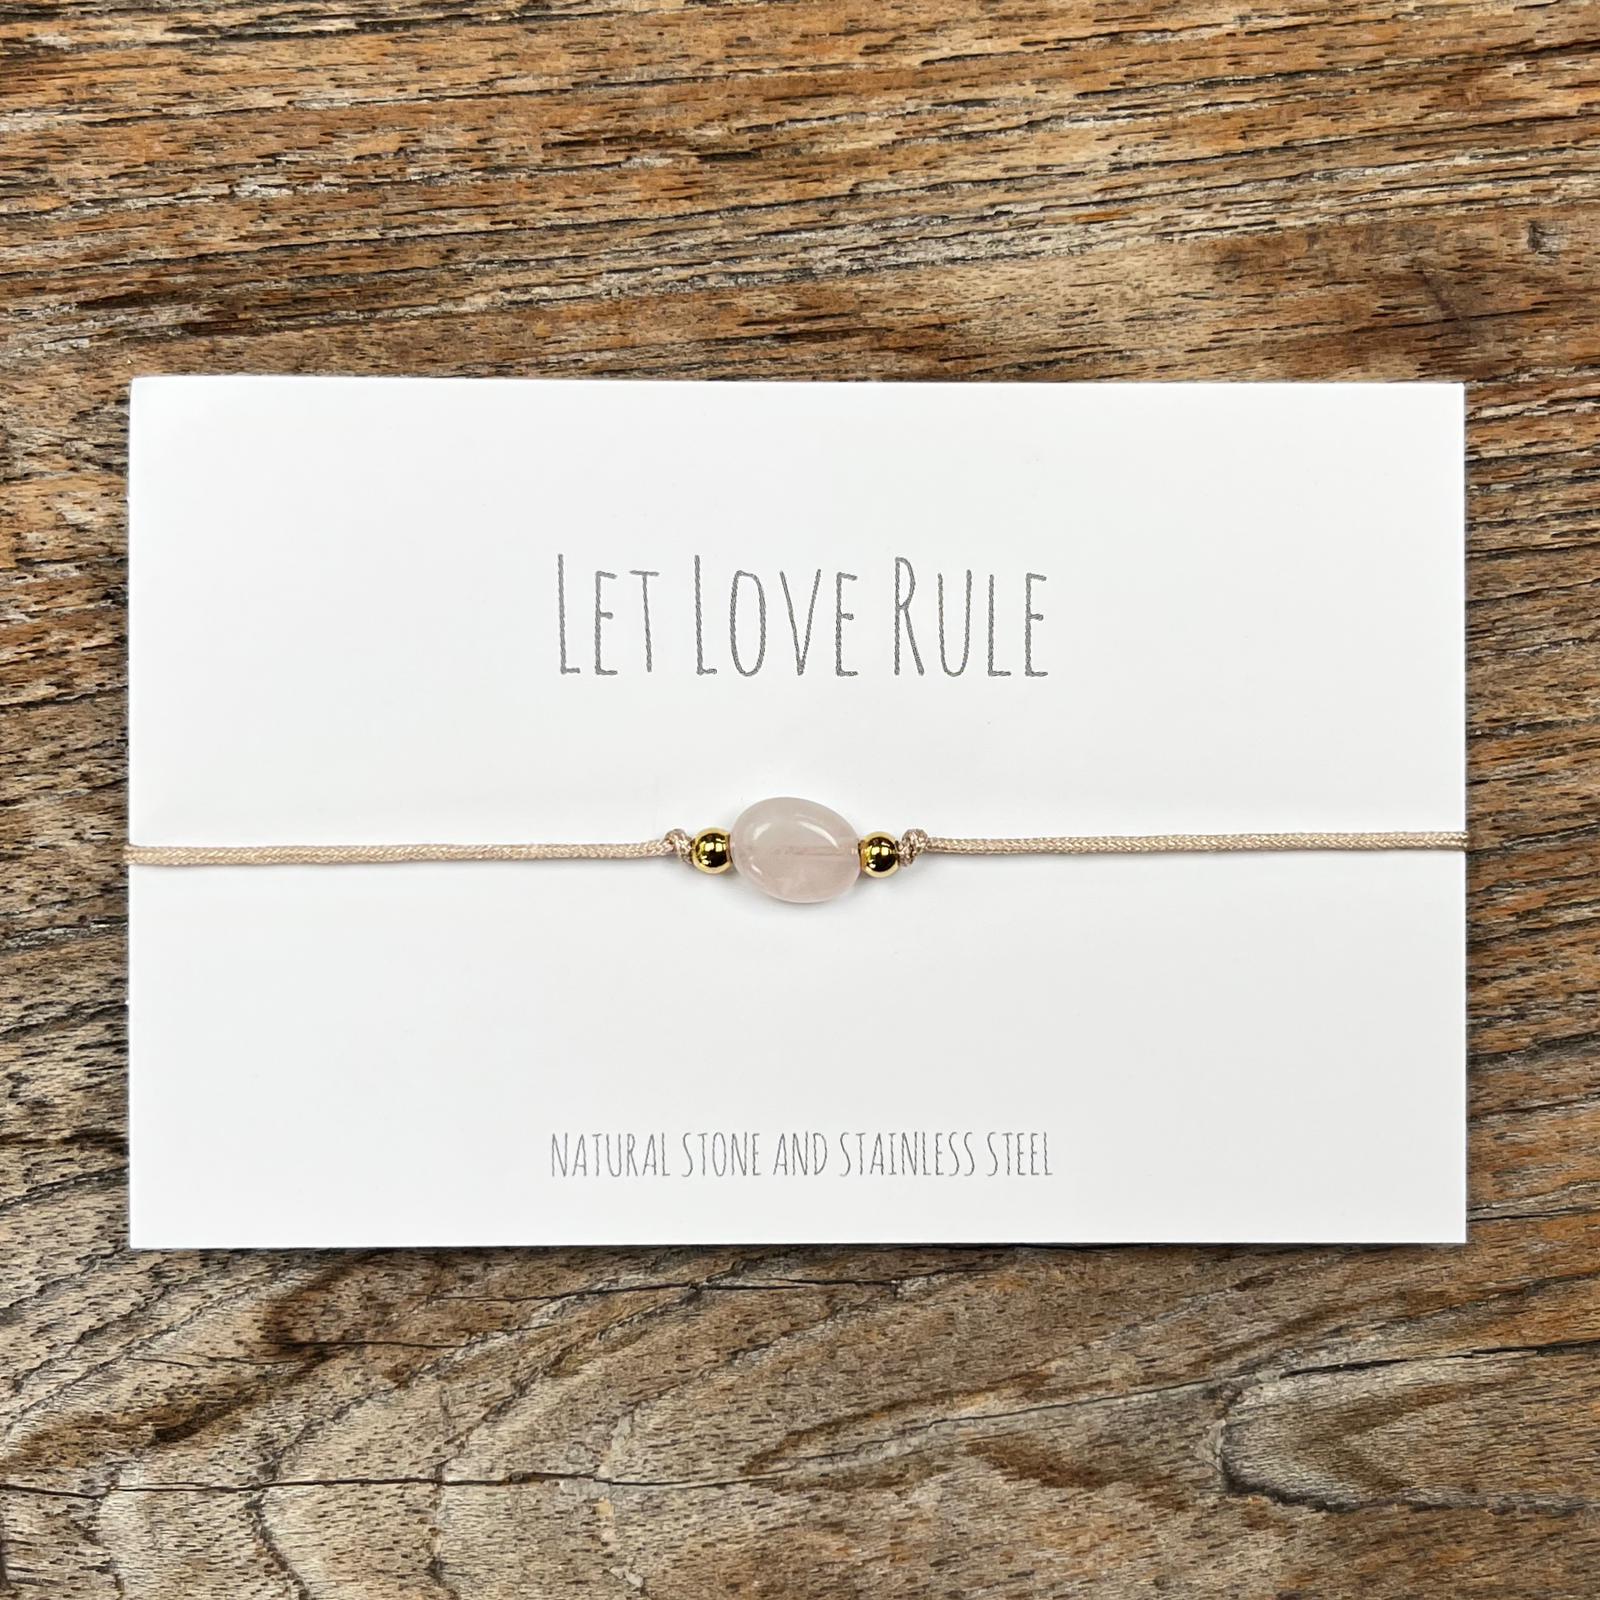 Let love rule - Rose Quartz